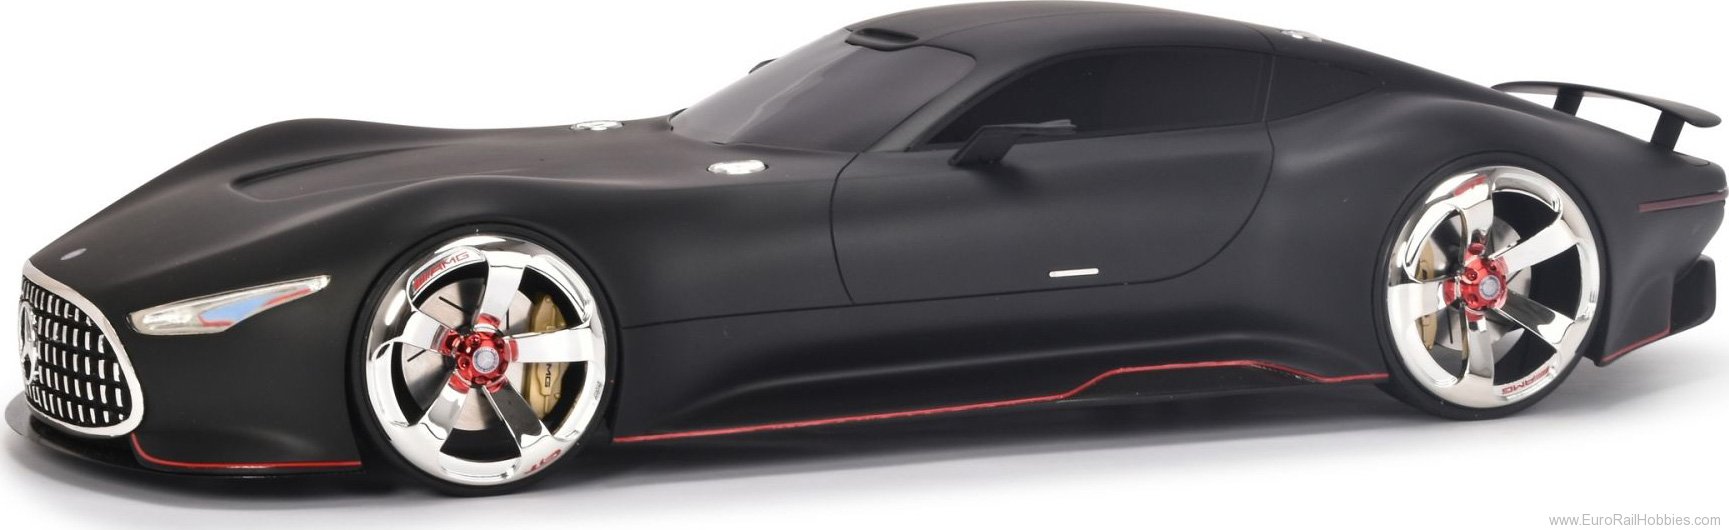 Schuco 450046500 MB AMG Vision GT matt black (PRO.R 12)